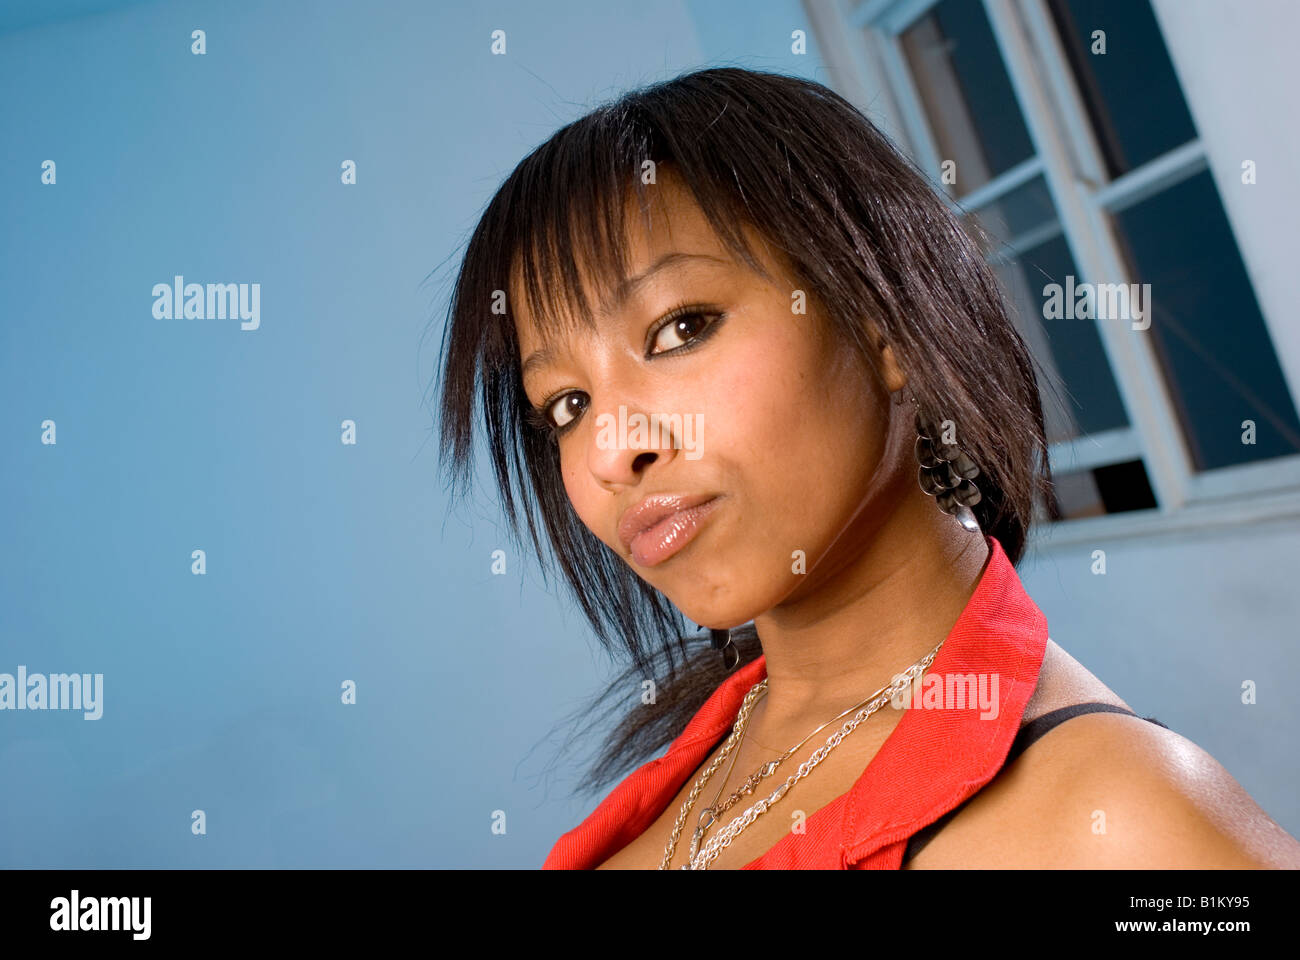 Chica negra africana en el divertido modo retrato Foto de stock